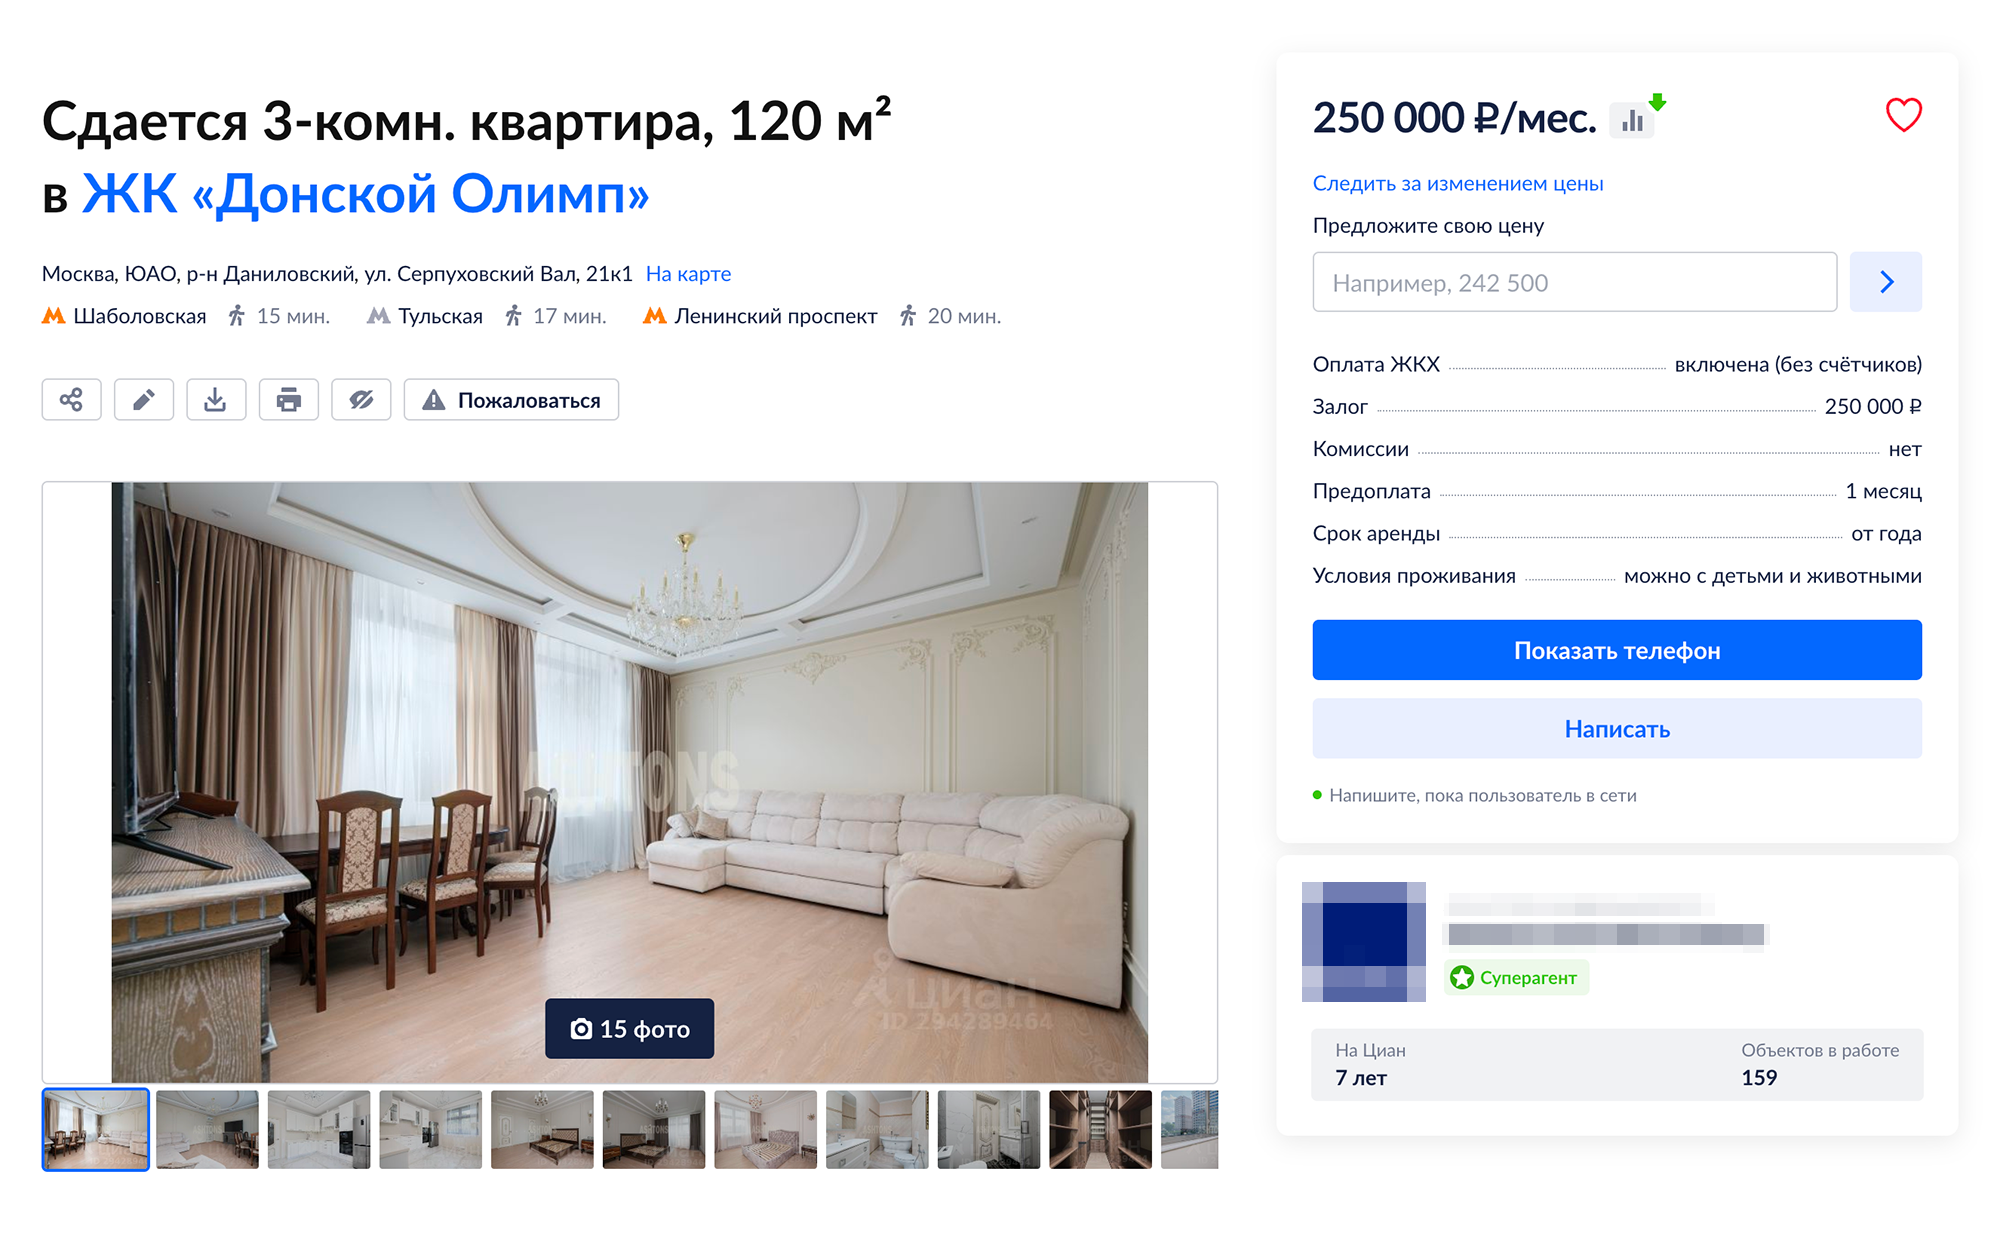 Вариант трехкомнатной квартиры в элитном ЖК. Источник: cian.ru